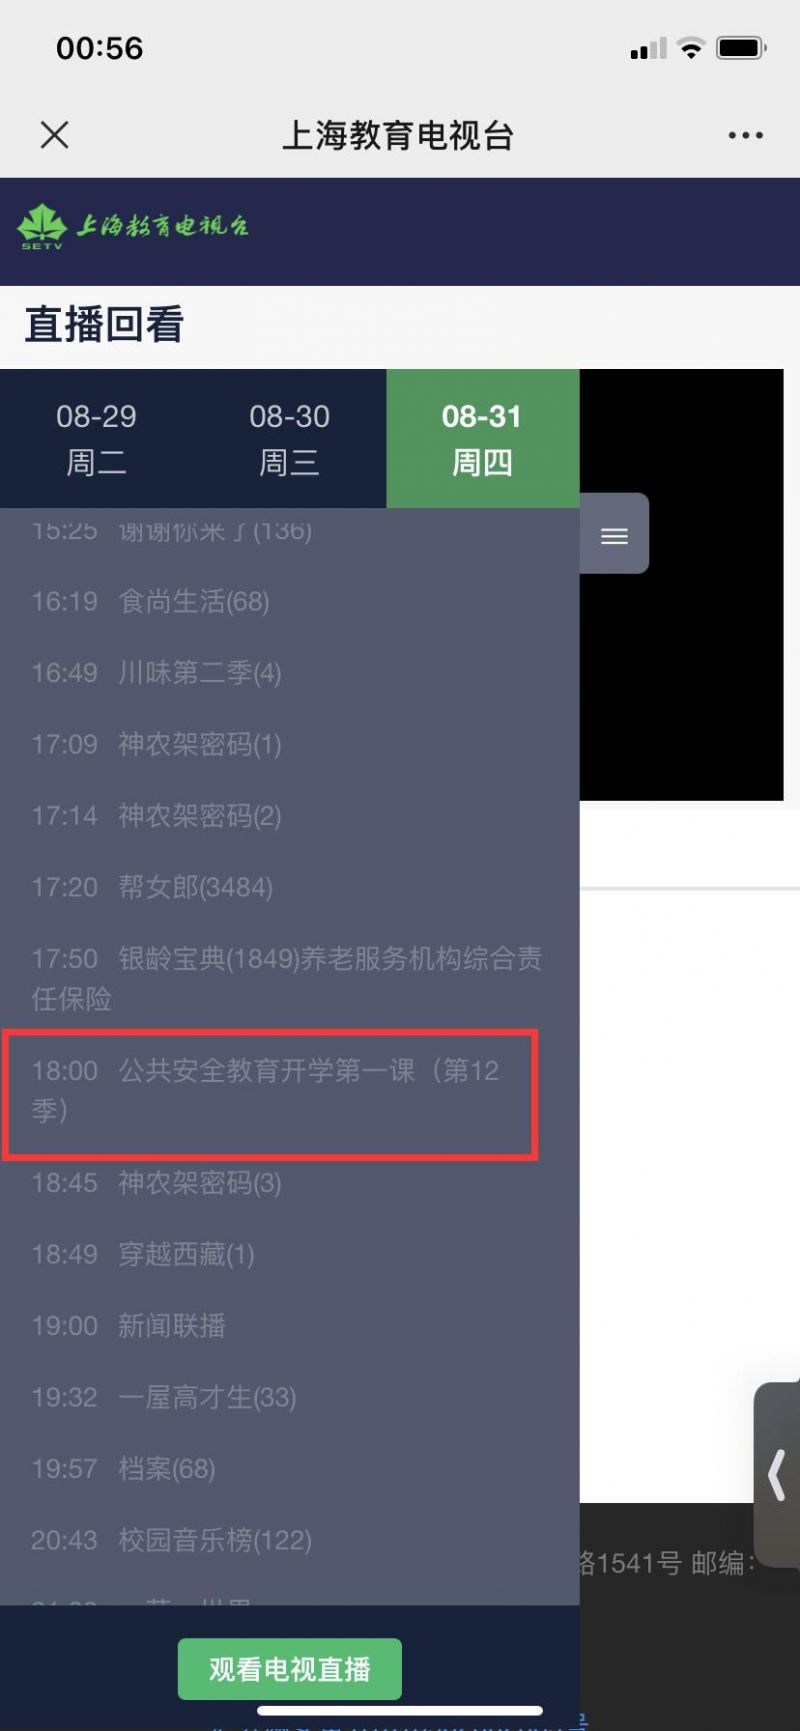 上海教育电视台在线直播观看入口(pc端+手机端)